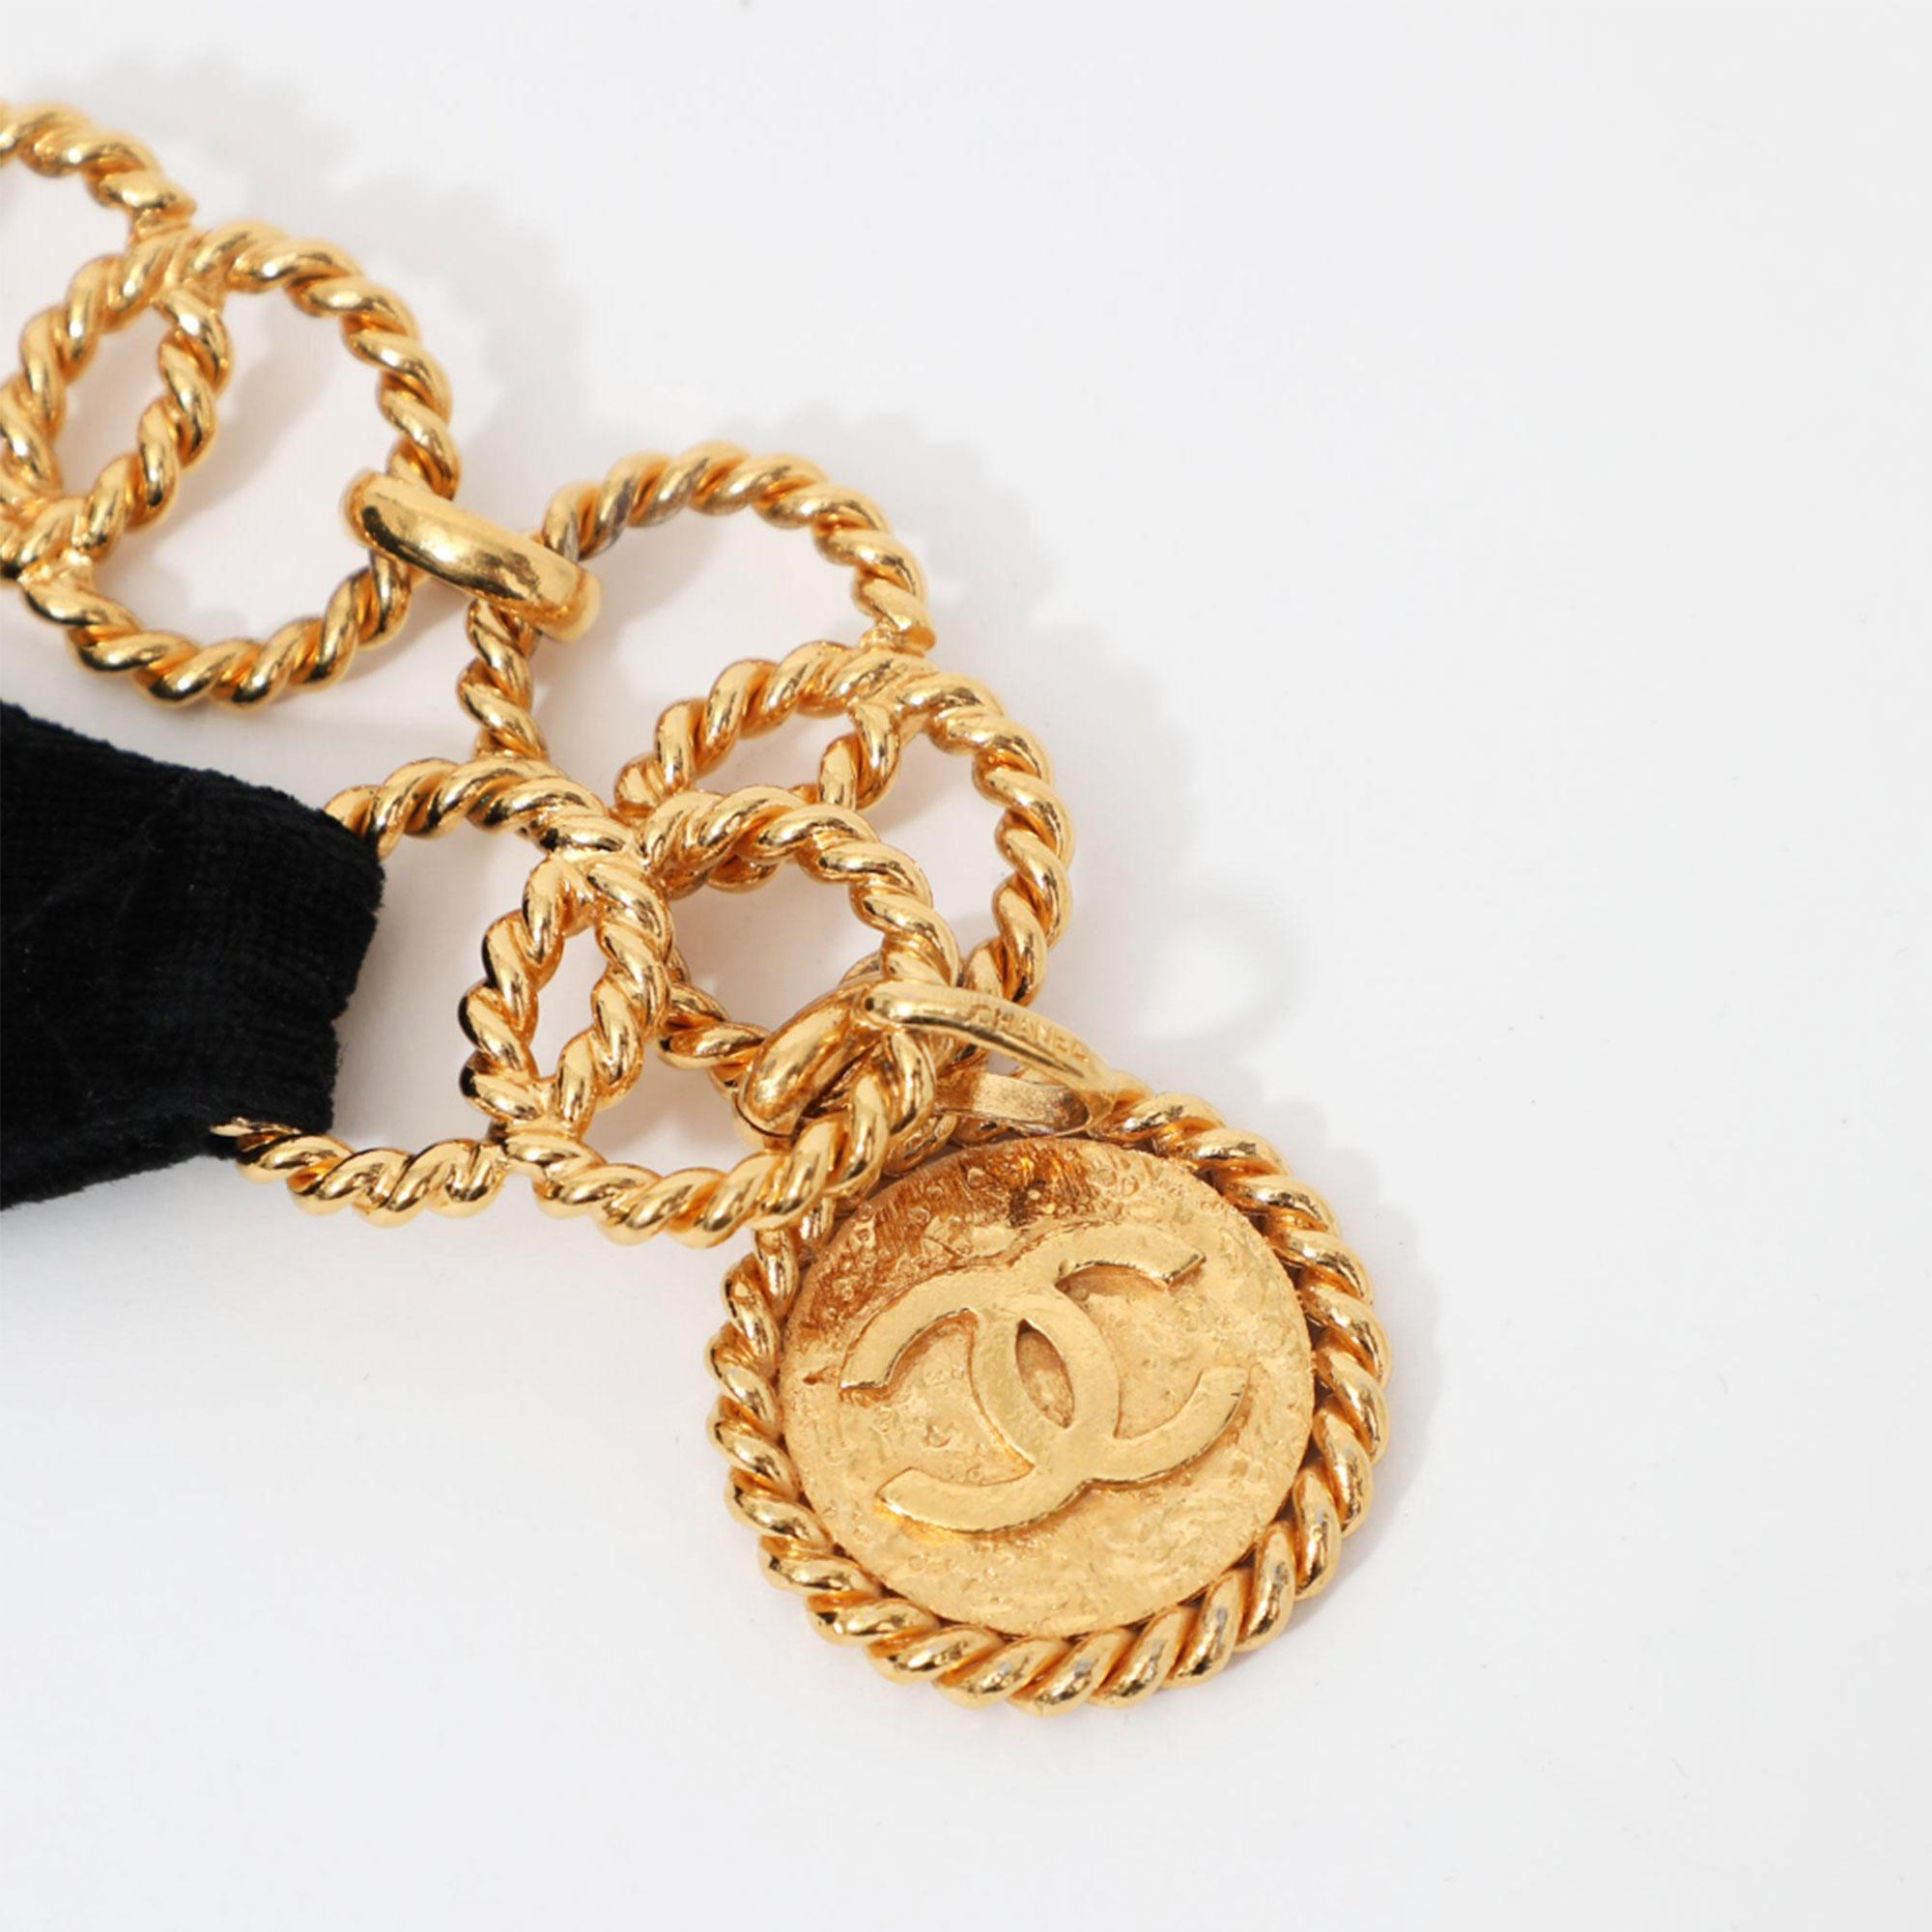 Chanel 1991 Vintage Velvet Quilted Medallion Fanny Pack Waist Belt Bag Rare Bag For Sale 6